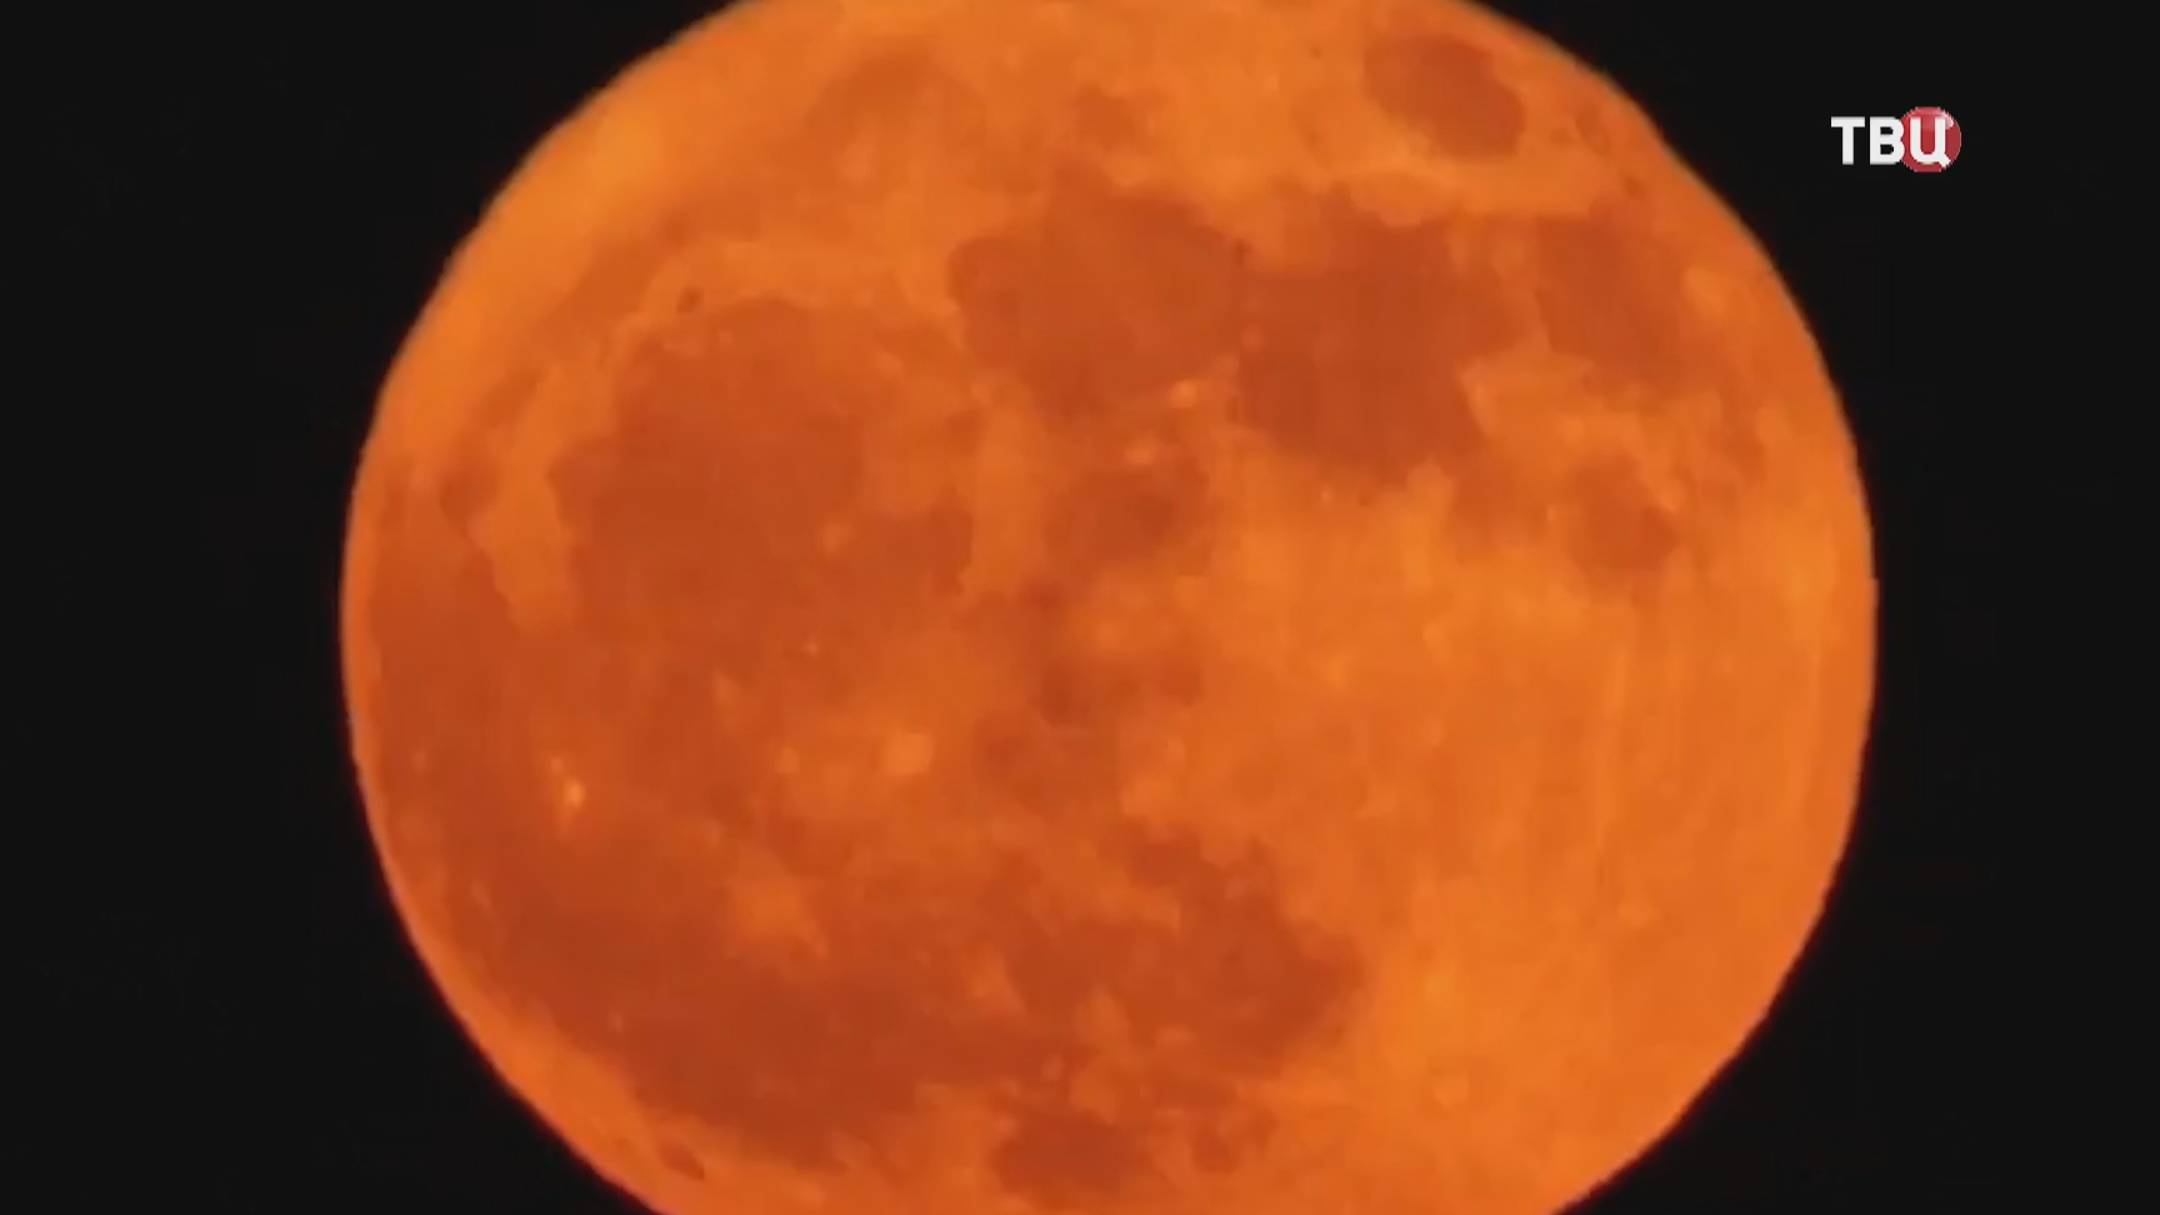 Оленья луна 21 июля: россияне увидят живописное полнолуние / События на ТВЦ